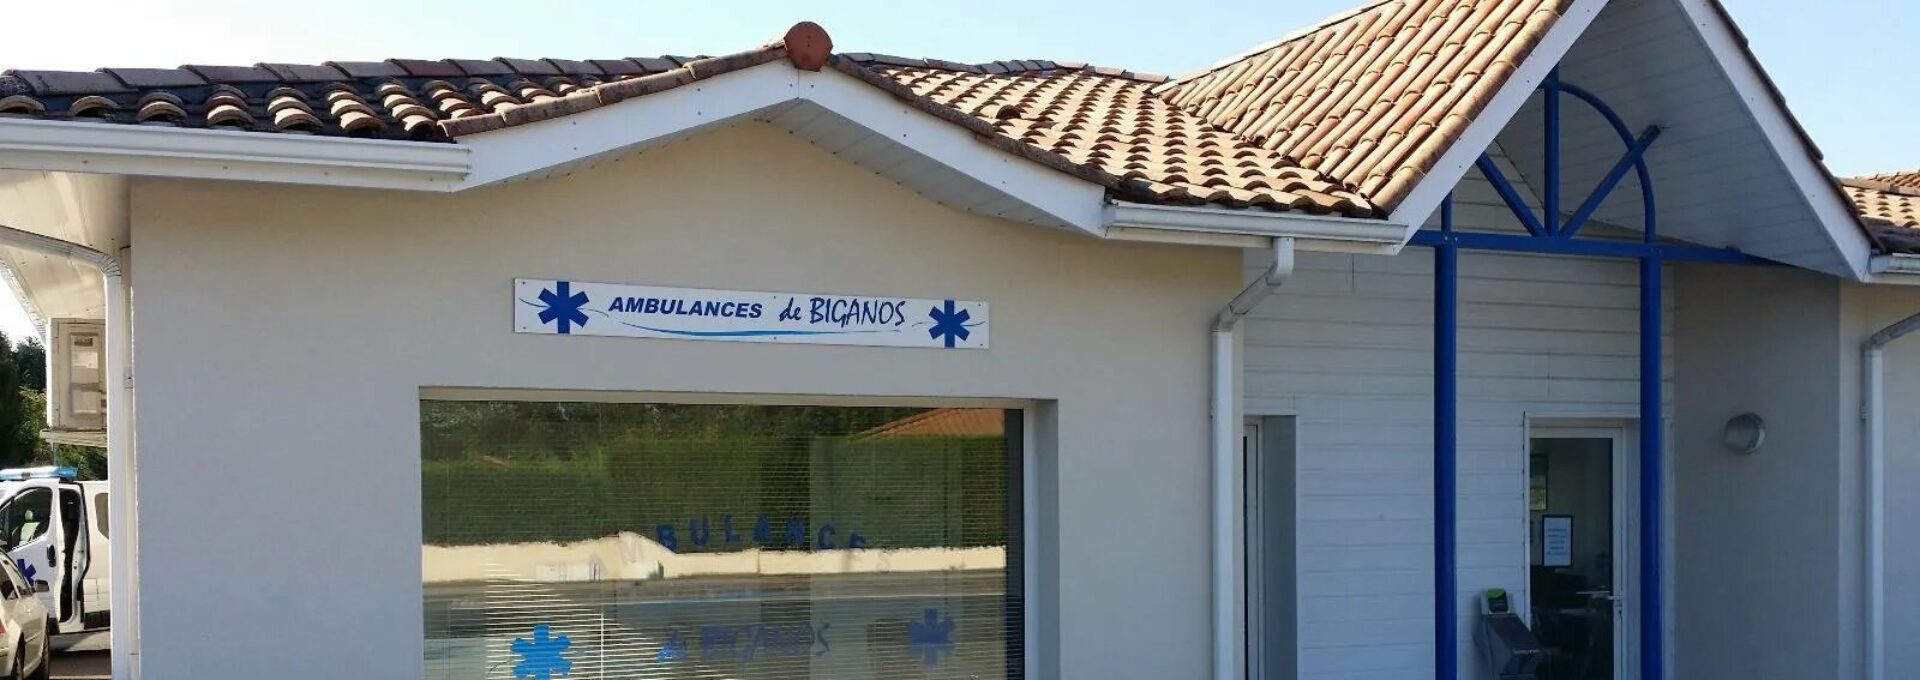 Ambulances de Biganos